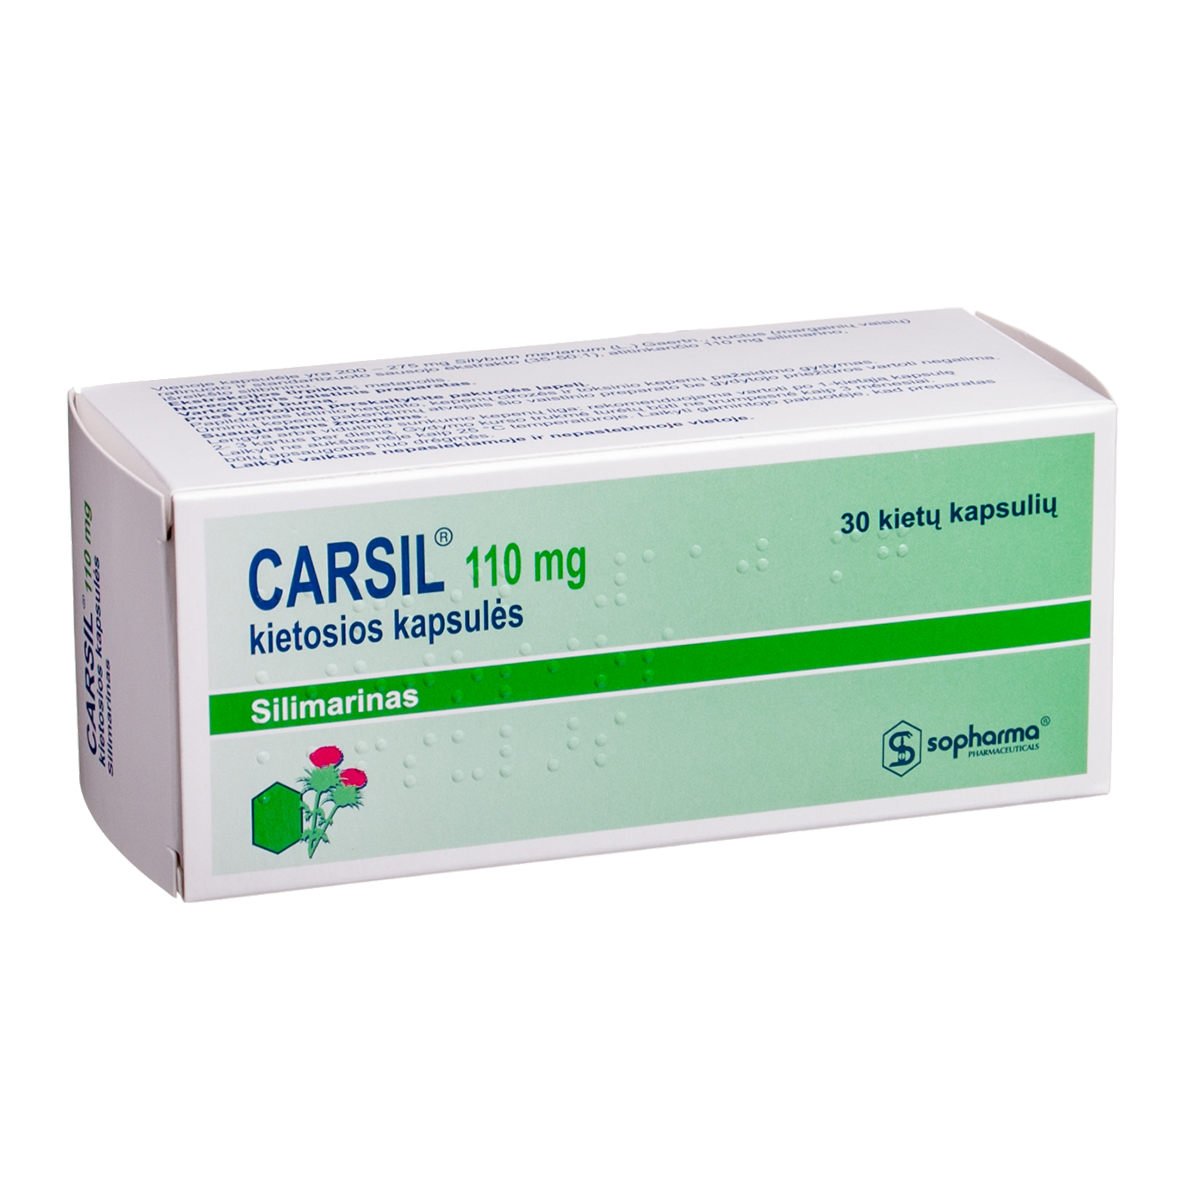 CARSIL, 110 mg, kietosios kapsulės, N30